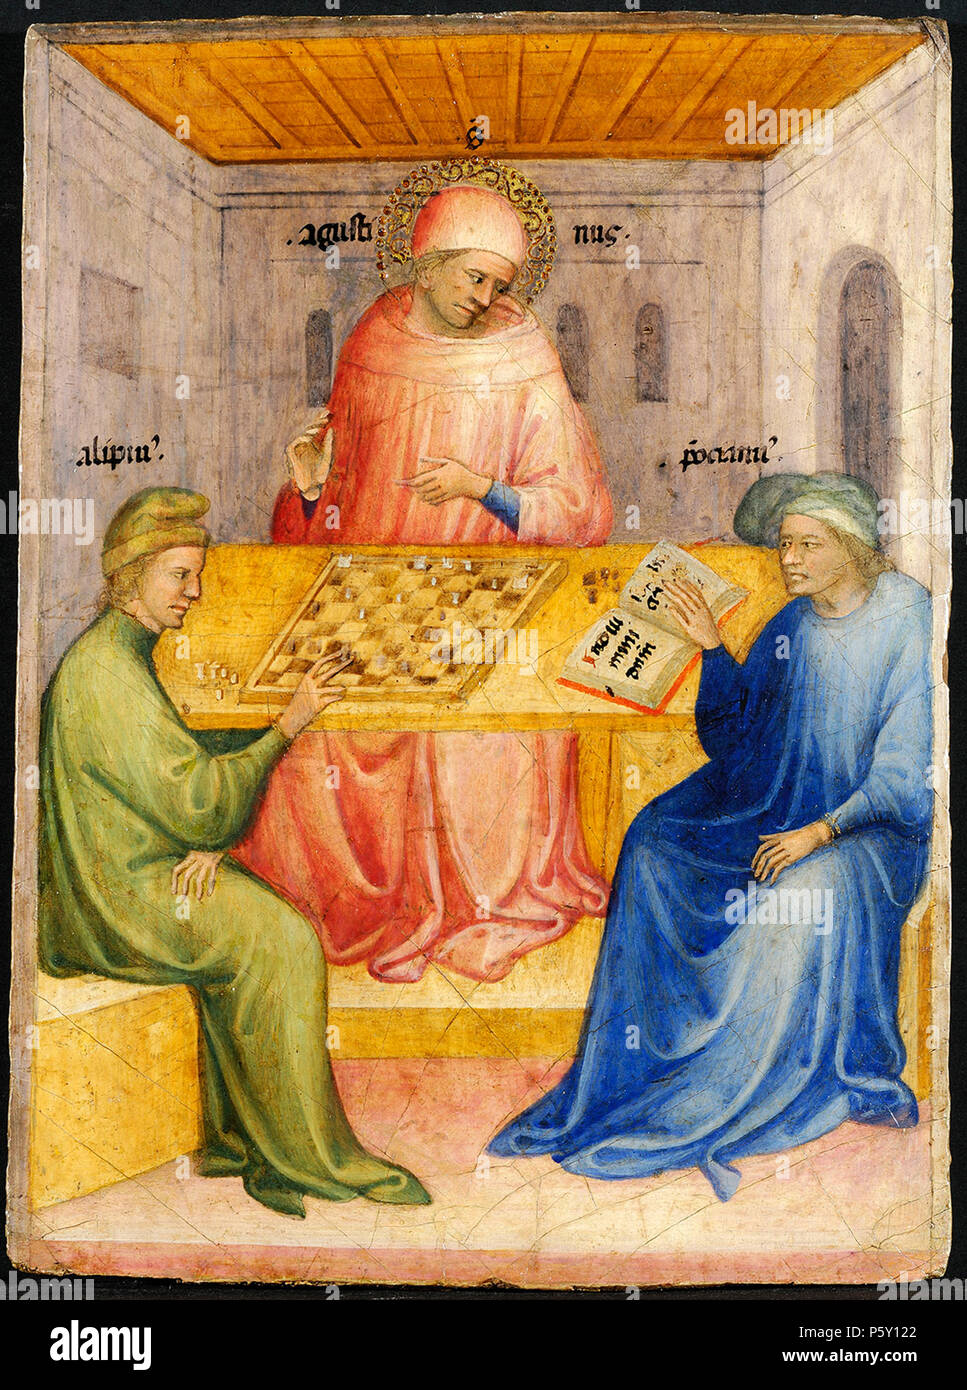 14 11 Nicolo di Pietro. Saint Augustin et Alypius reçoivent la visite de Ponticianus 1413-15 Musée des Beaux-Arts, Lyon Stock Photo